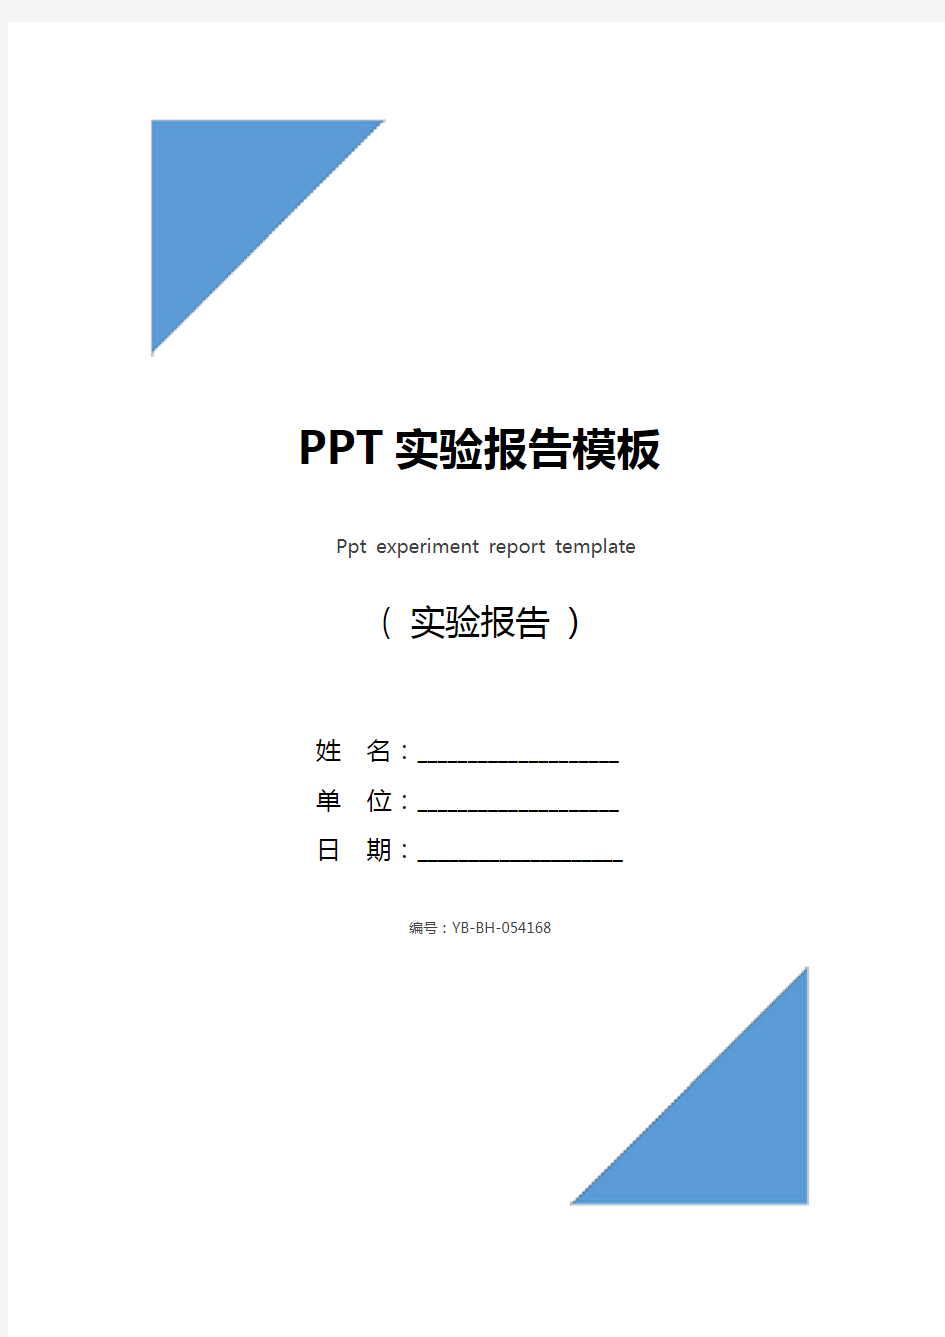 PPT实验报告模板